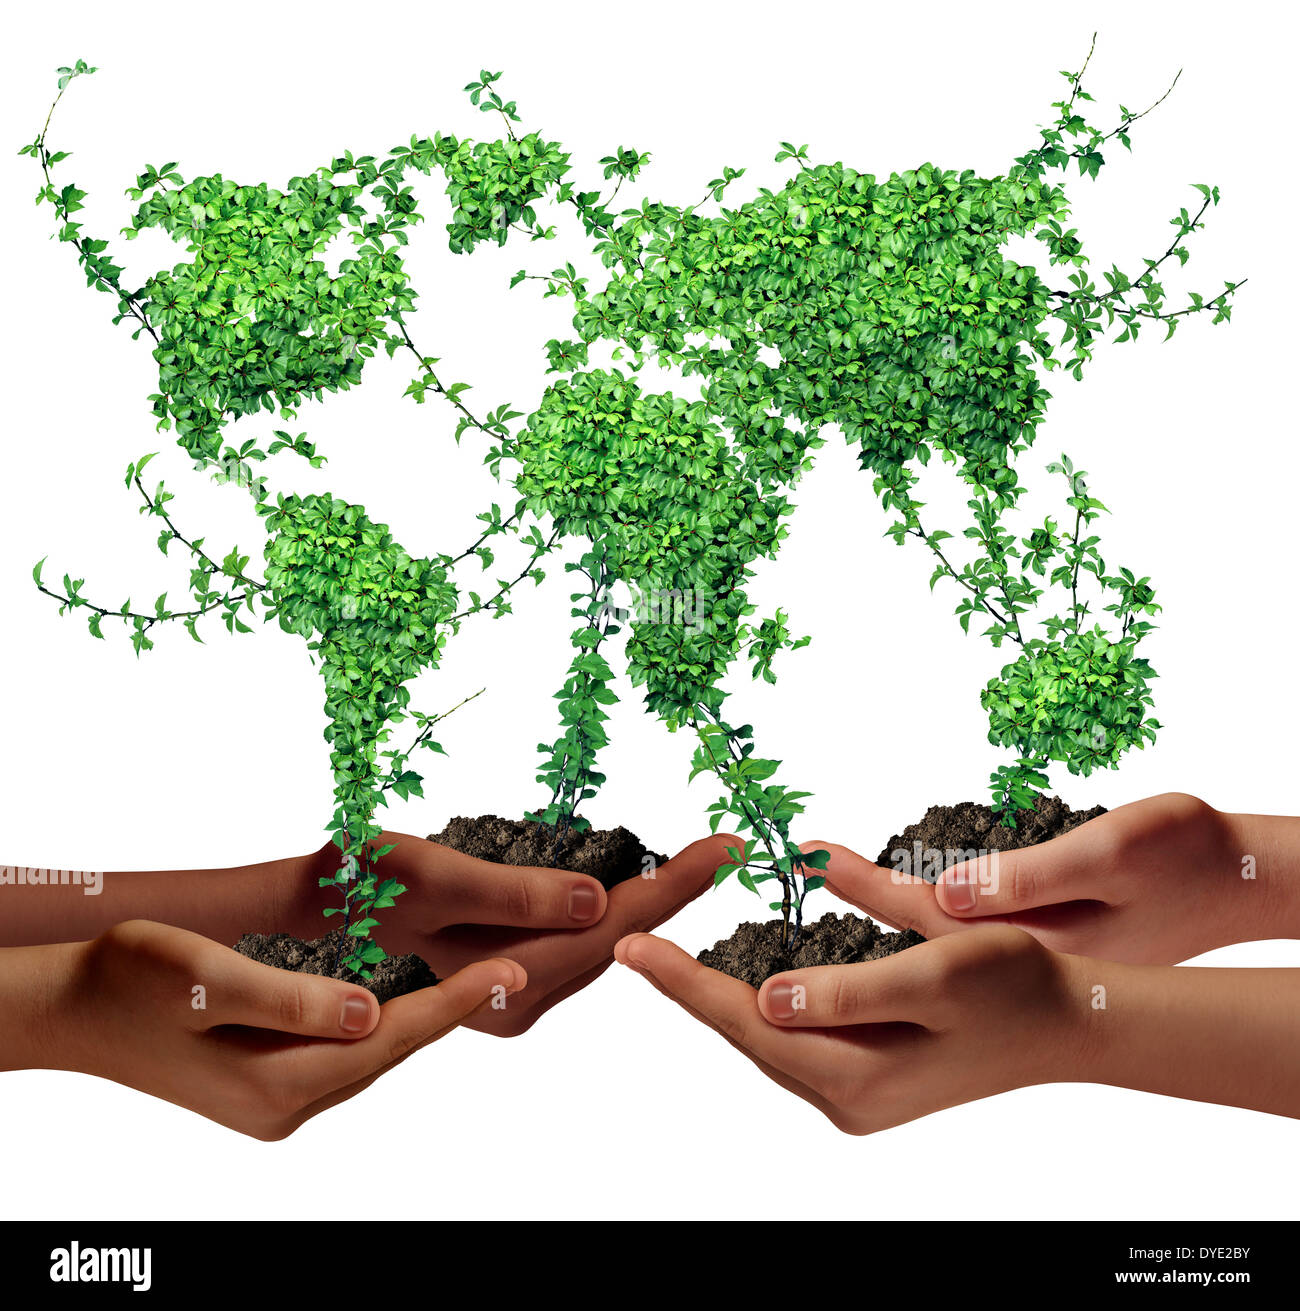 Medio ambiente y desarrollo empresarial de la comunidad concepto como un  grupo de personas de etnia mundial manos sosteniendo las plantas verdes con  hojas en forma de el mundo como una metáfora